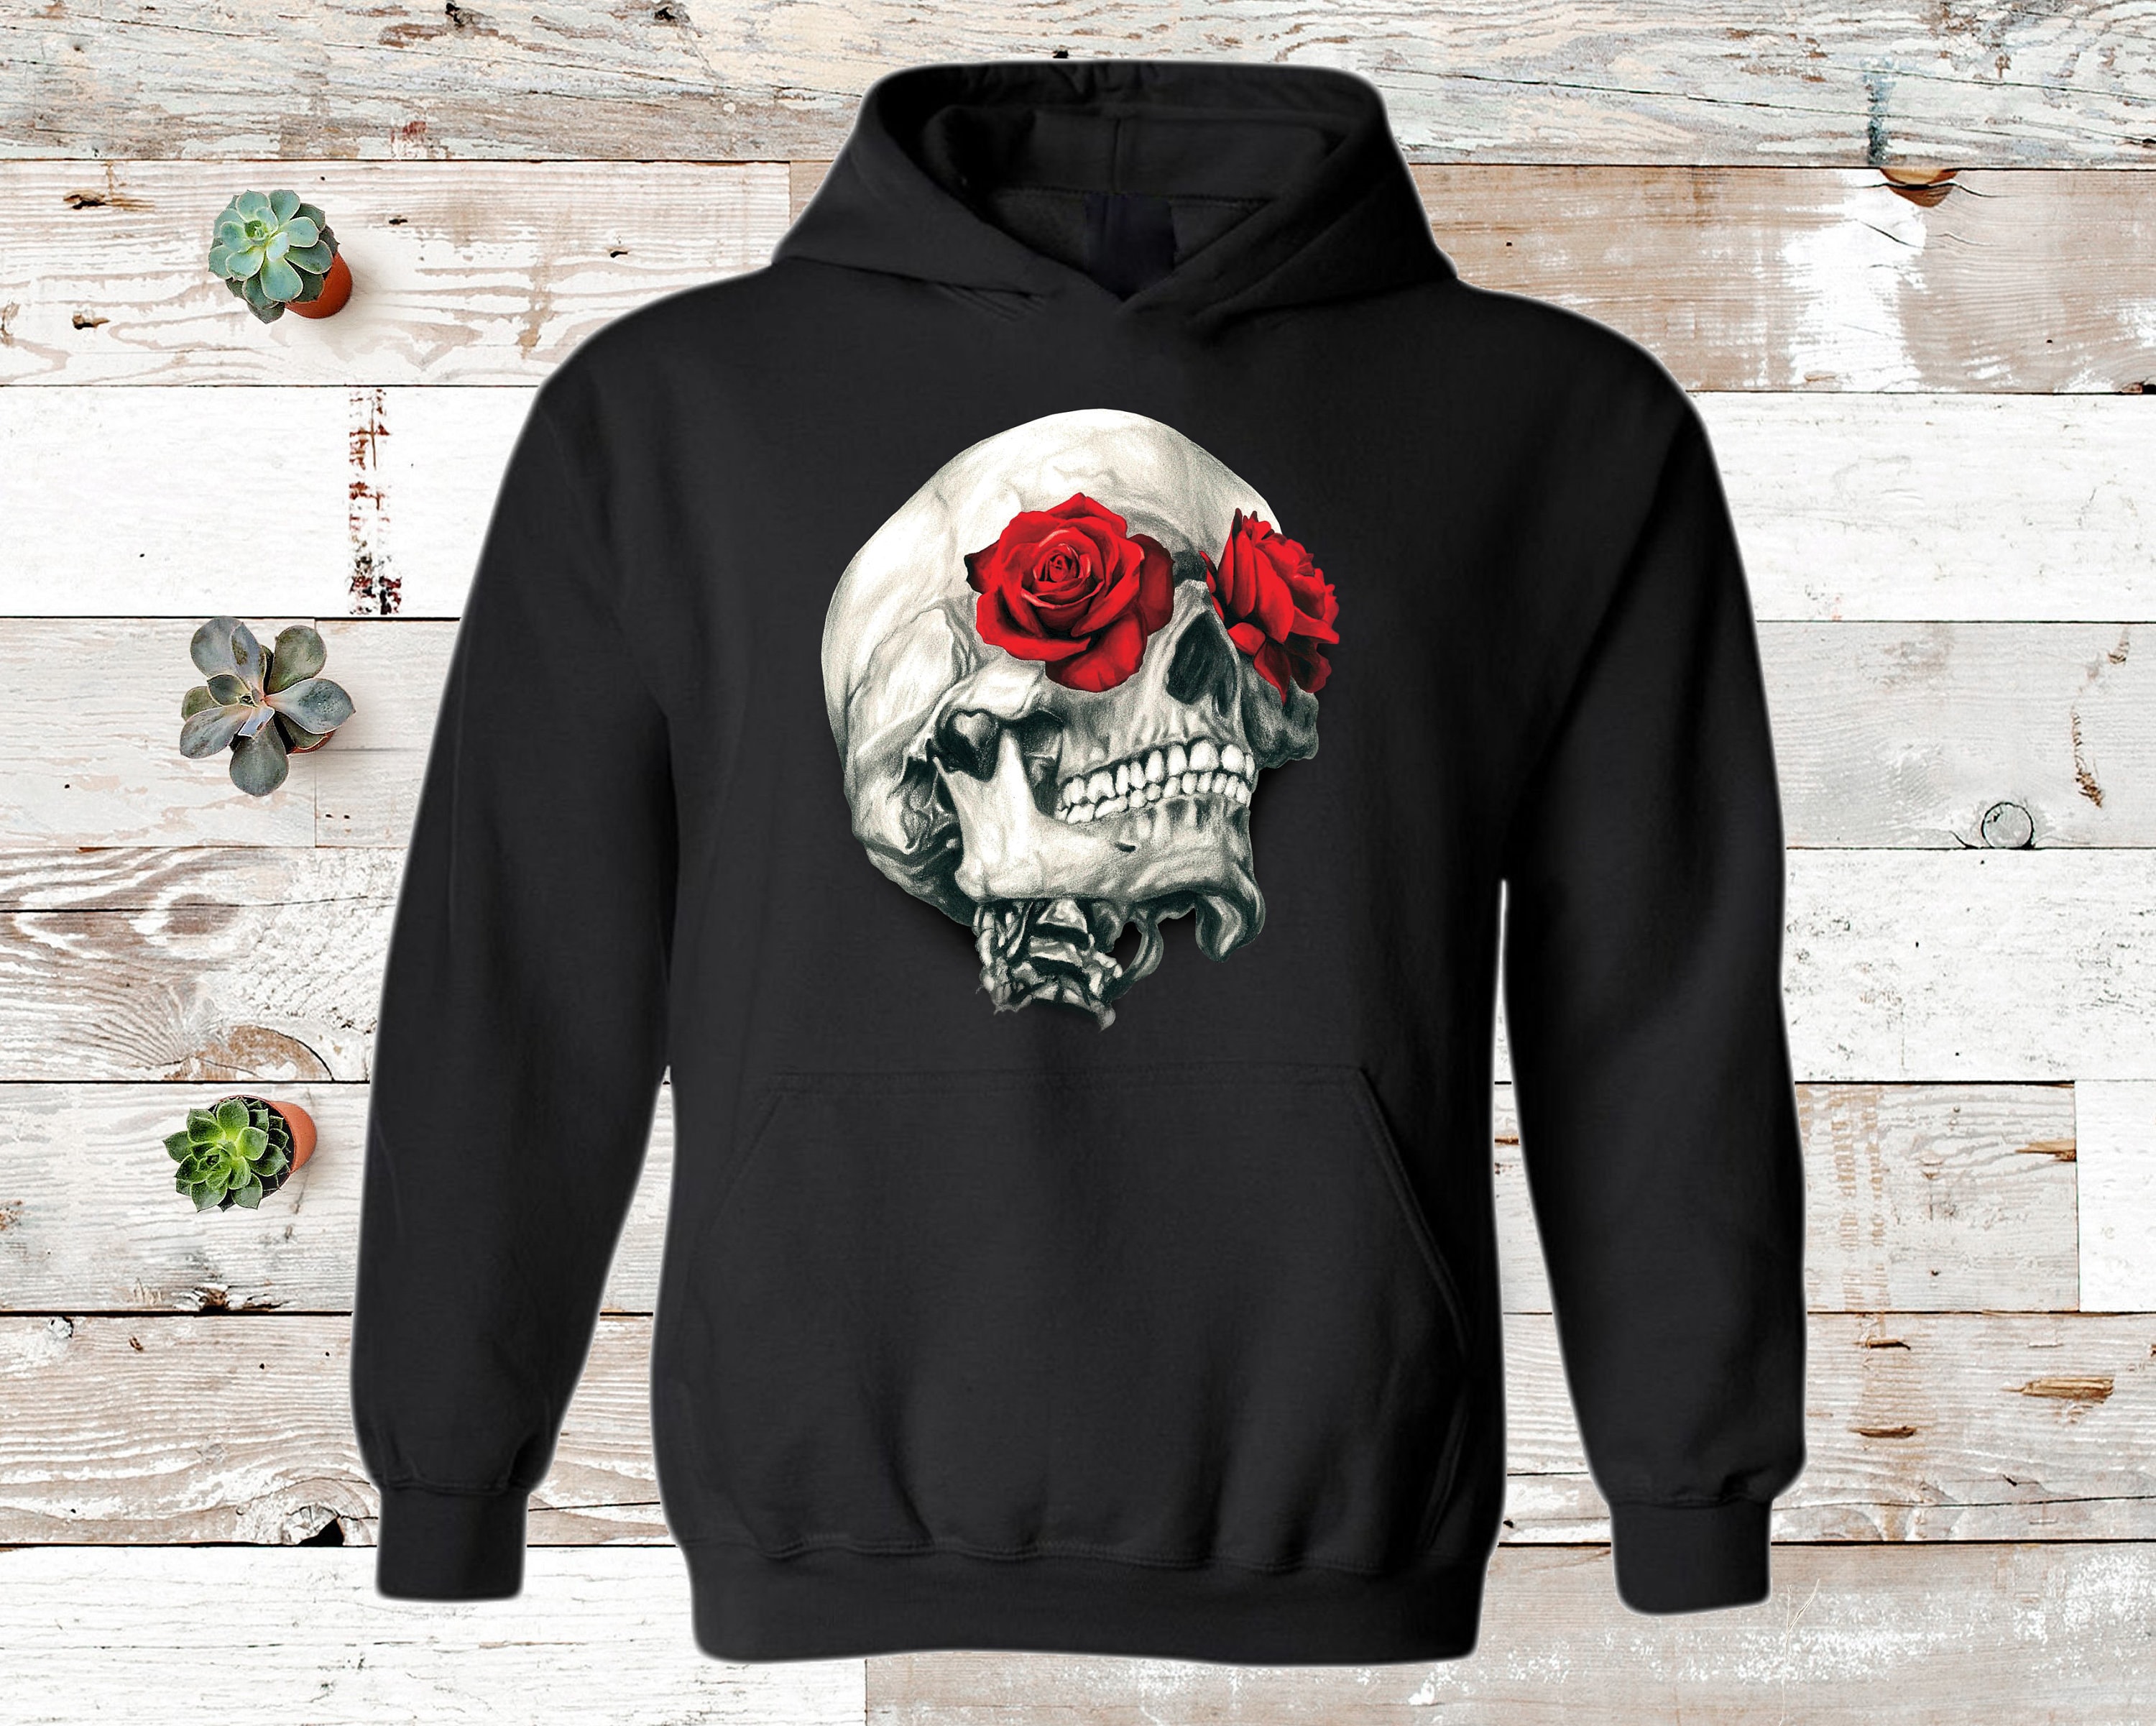 Skull Hoodie Skull Rose Hoodies Skulls and Roses Rock Music Heavy Metal  Gift Hoodie Unisex Hoodies for Men and Women 